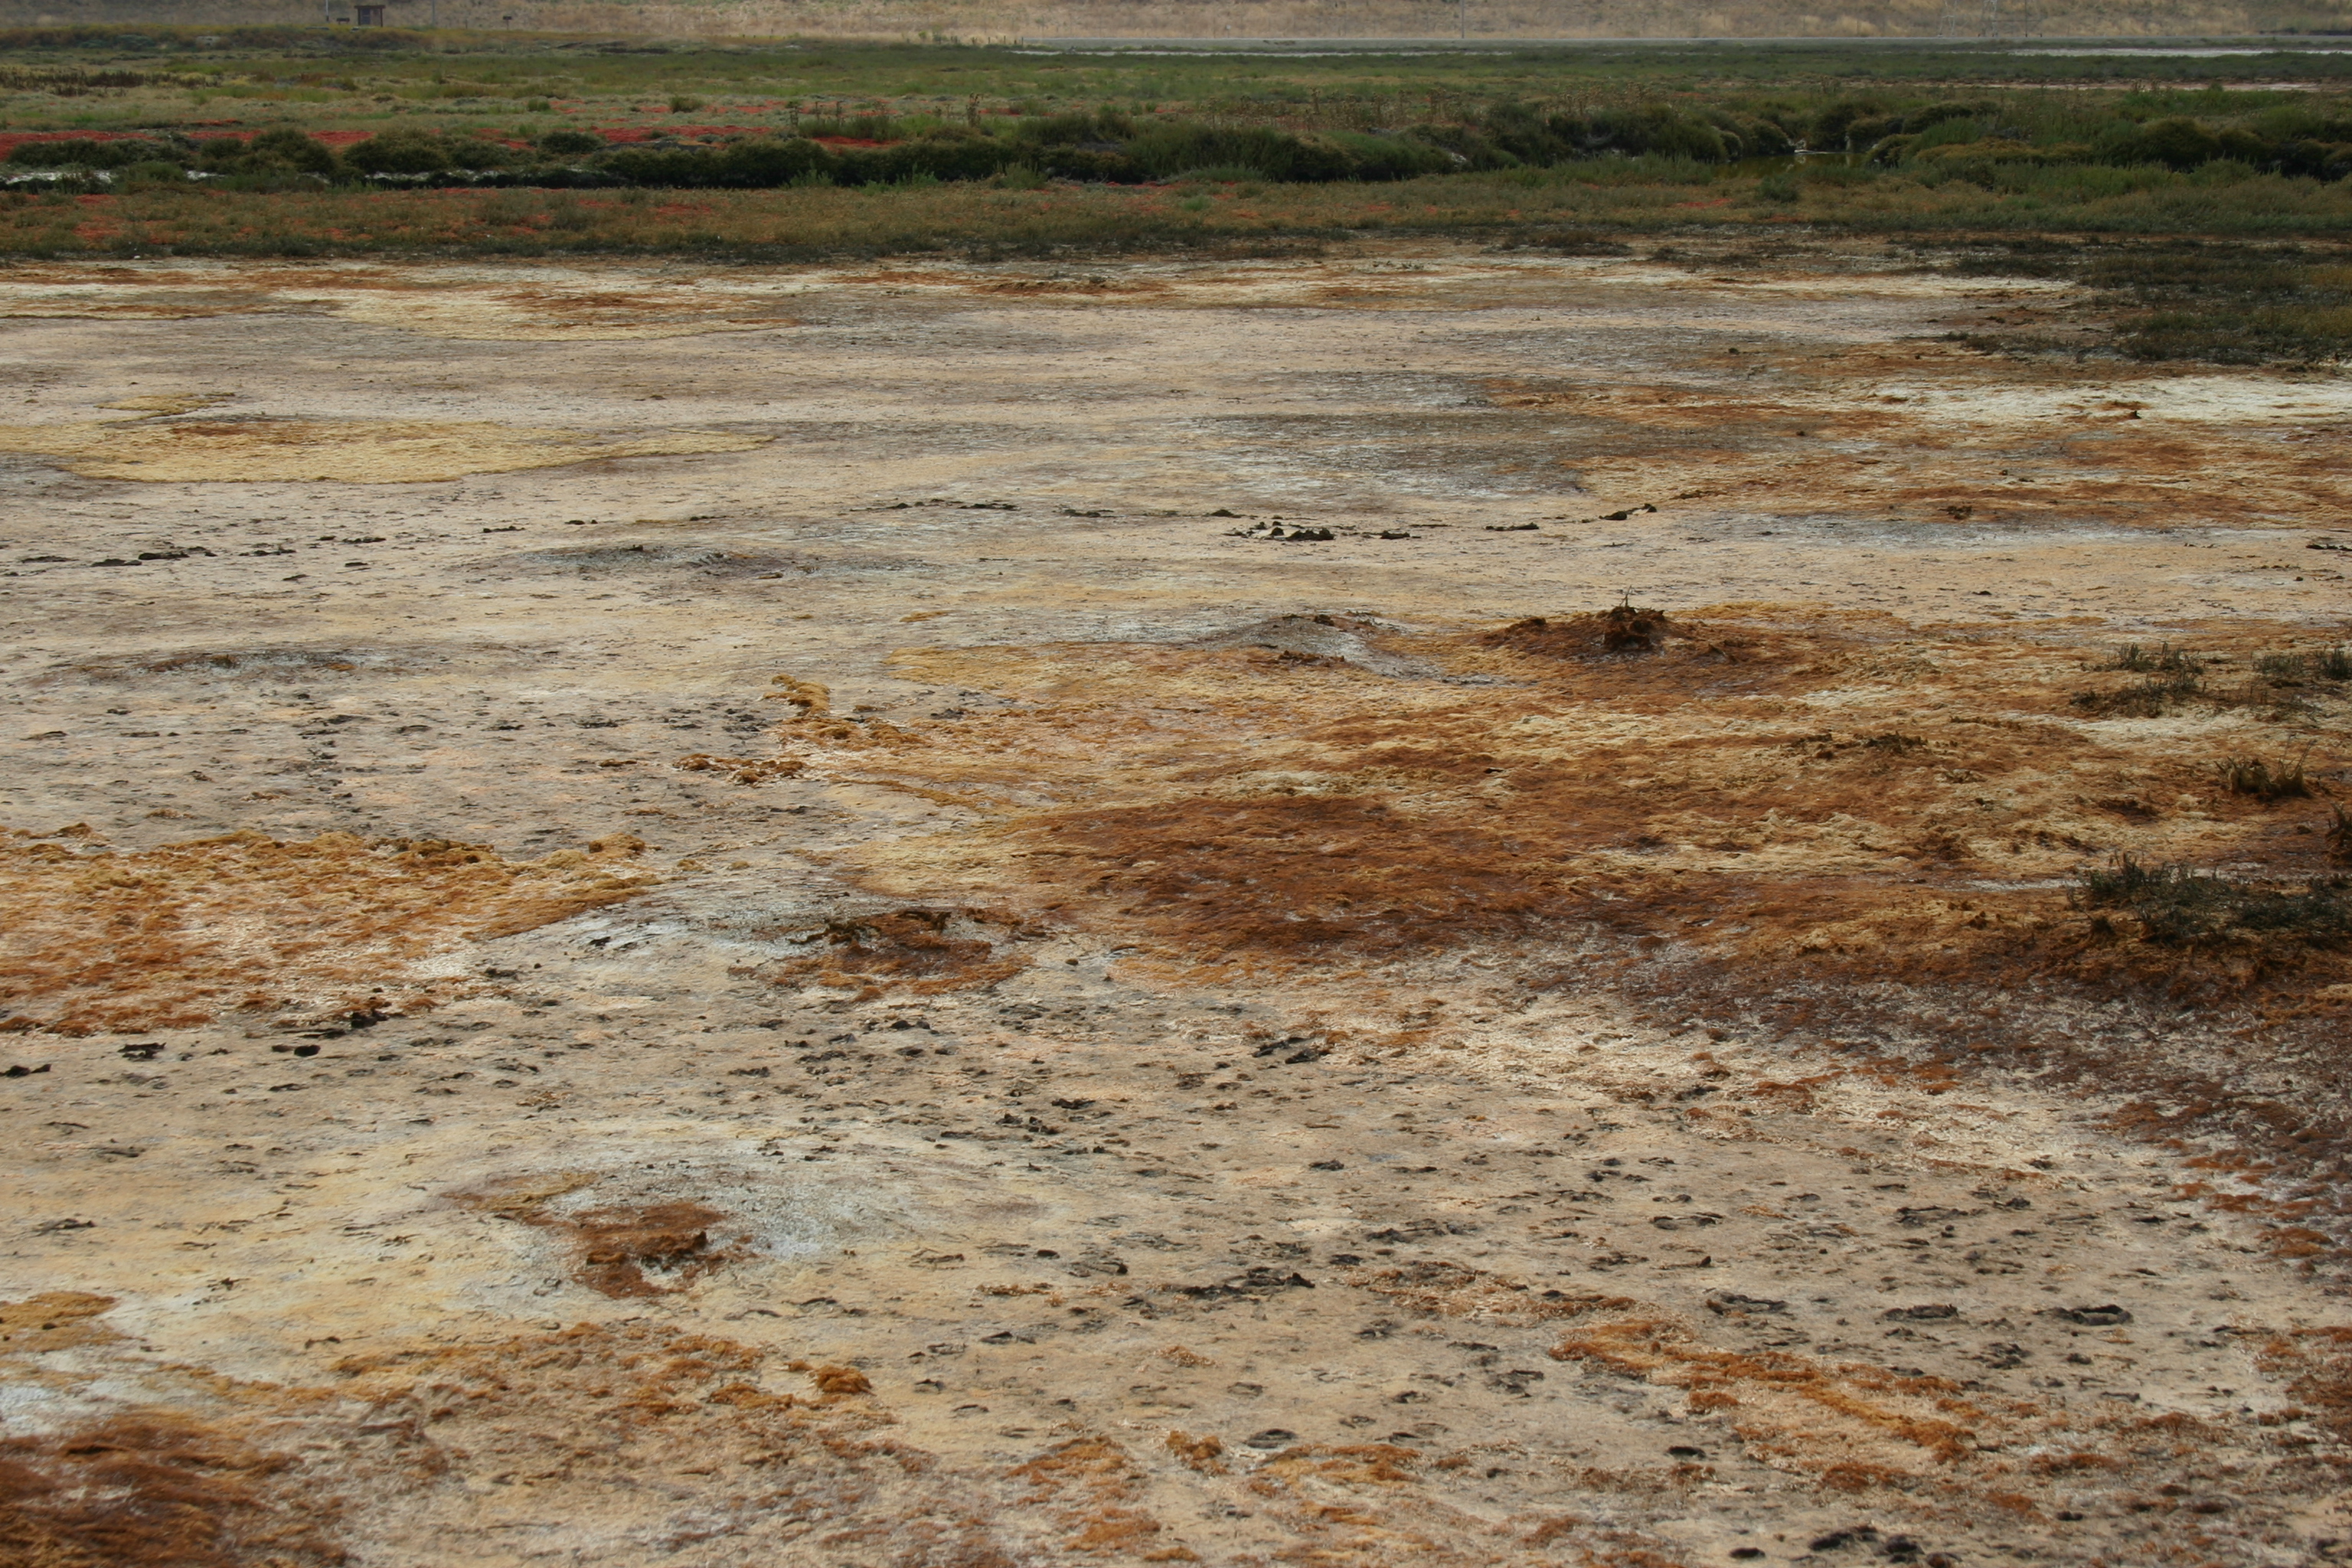 Footprints in the mud of a salt marsh.